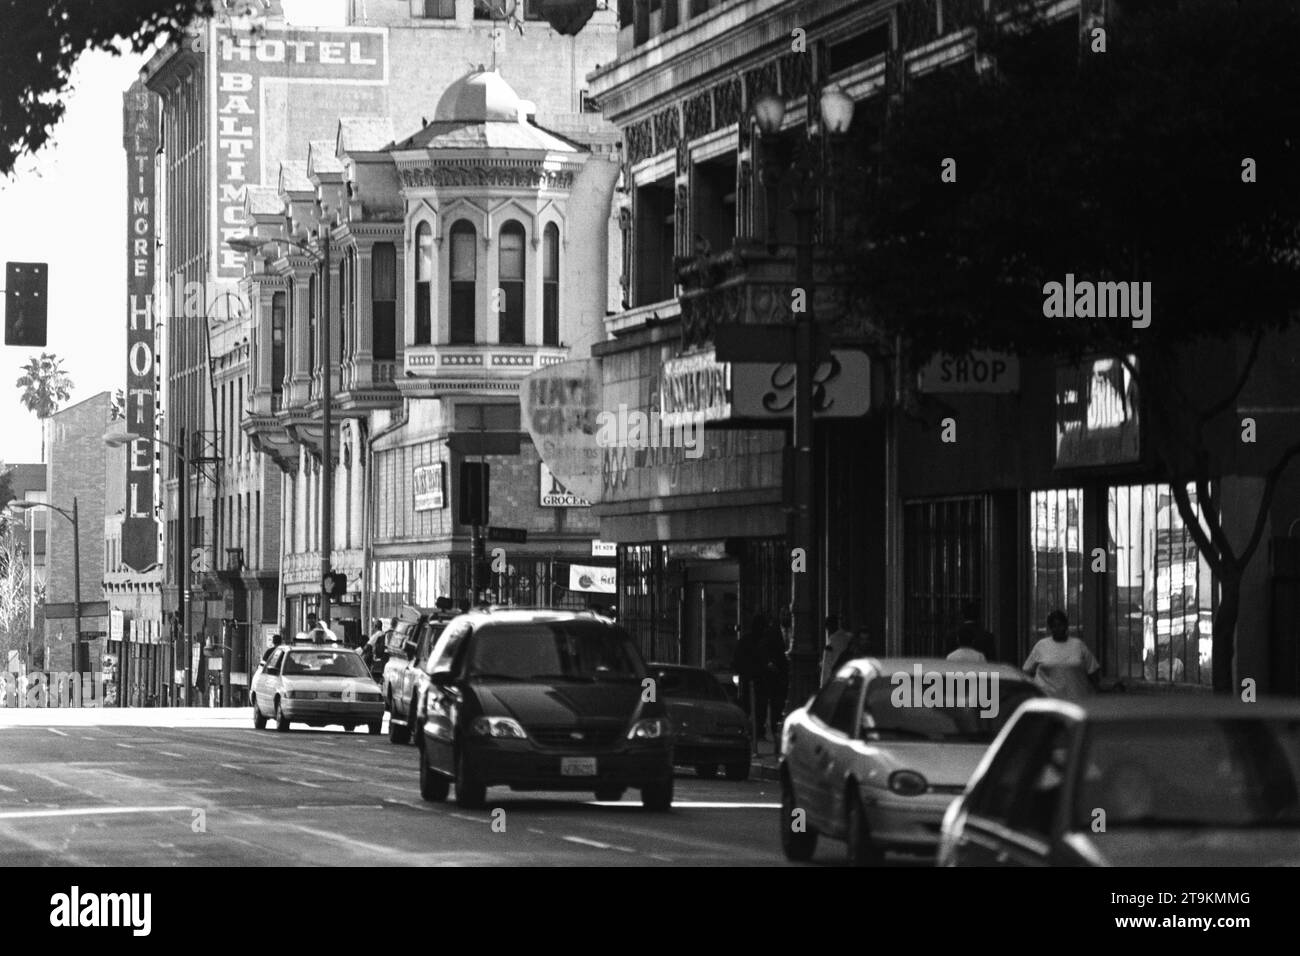 Los Angeles, California, Stati Uniti d'America - 9 gennaio 2000: Editoriale d'archivio nero e vista della grintosa 5th Street in Main Street nel centro di LOS ANGELES. Girato su pellicola. Foto Stock